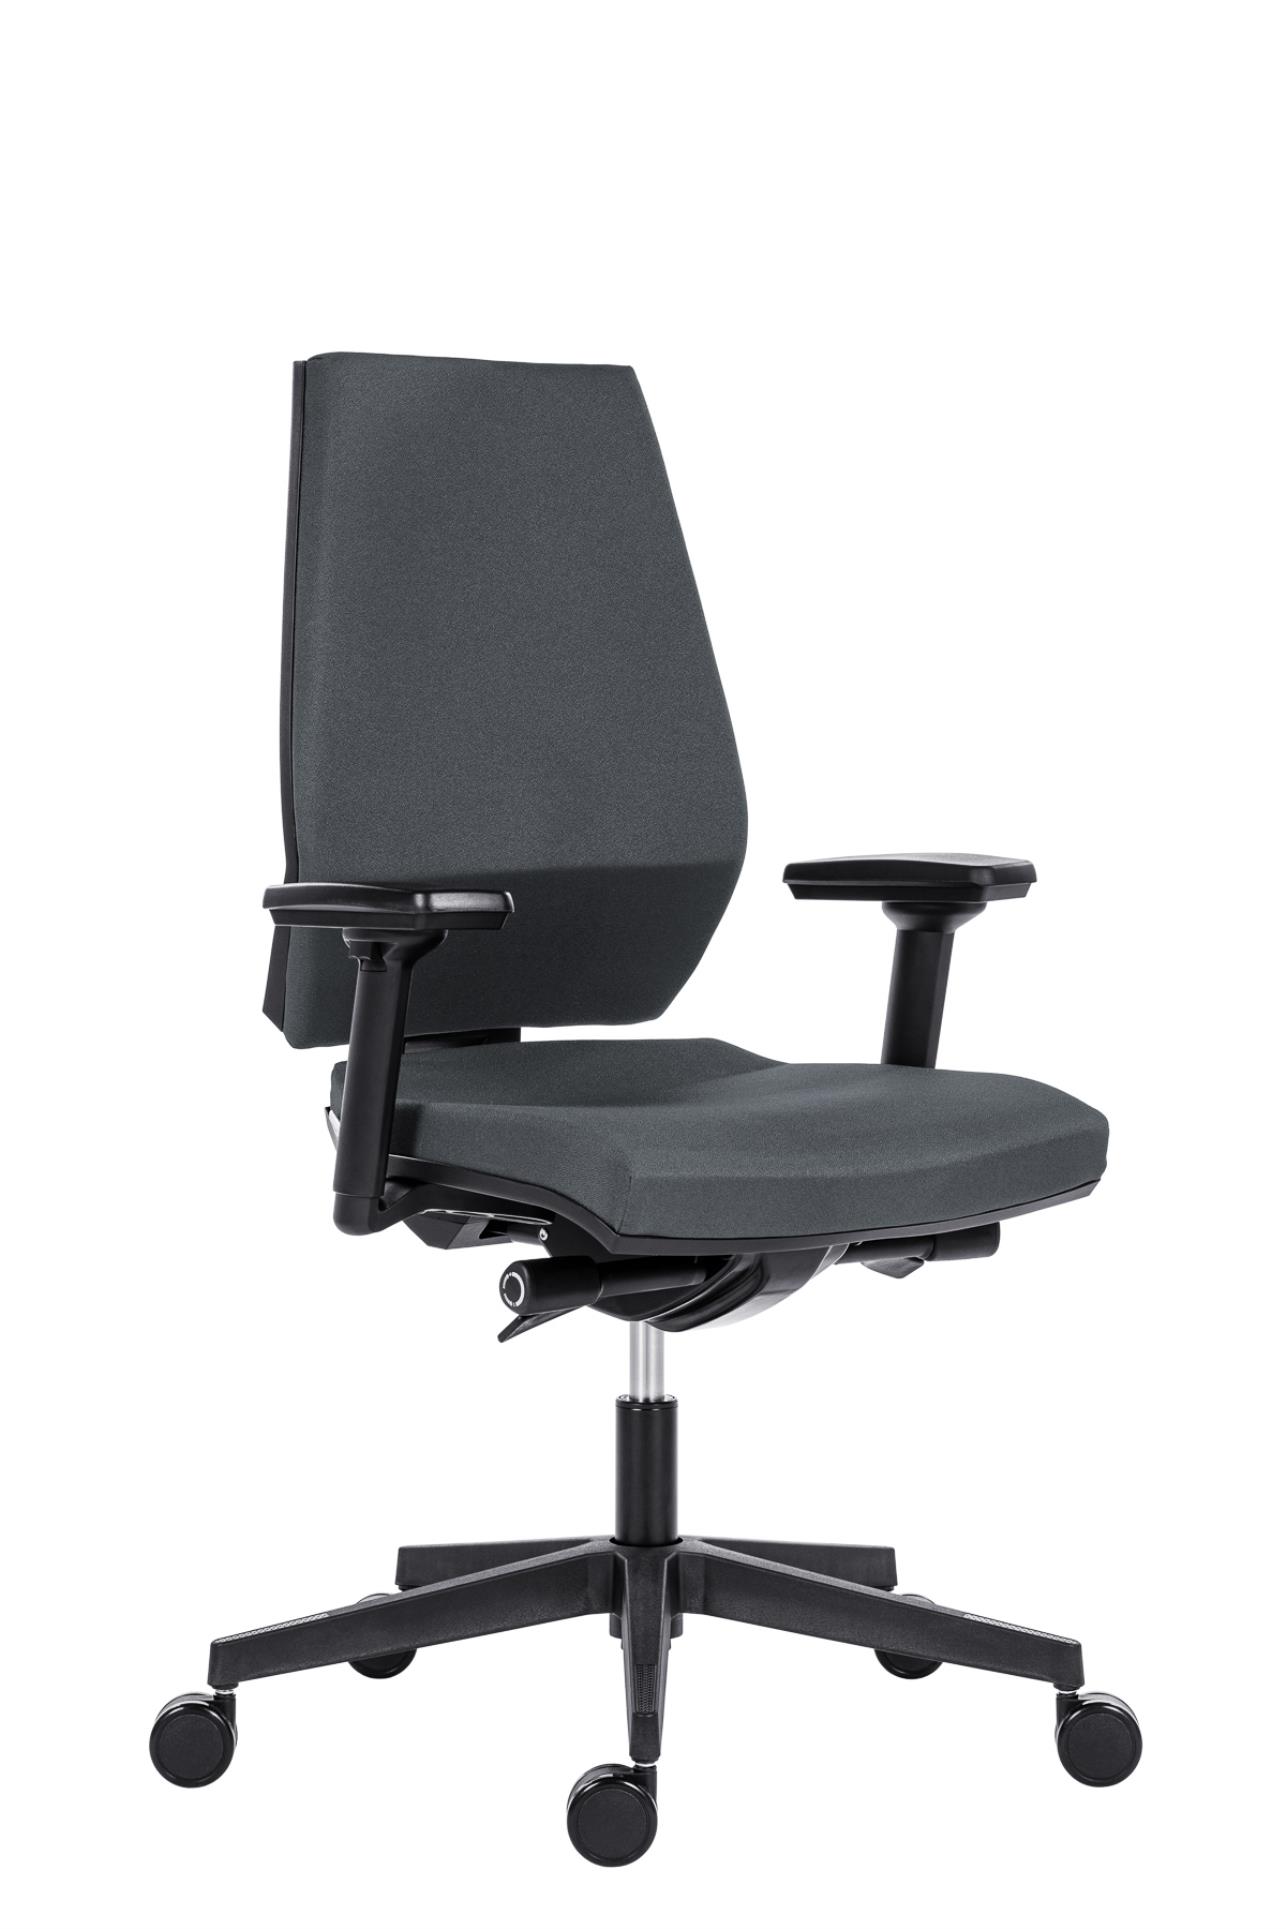 Antares Kancelářská židle Motion - synchro, šedá